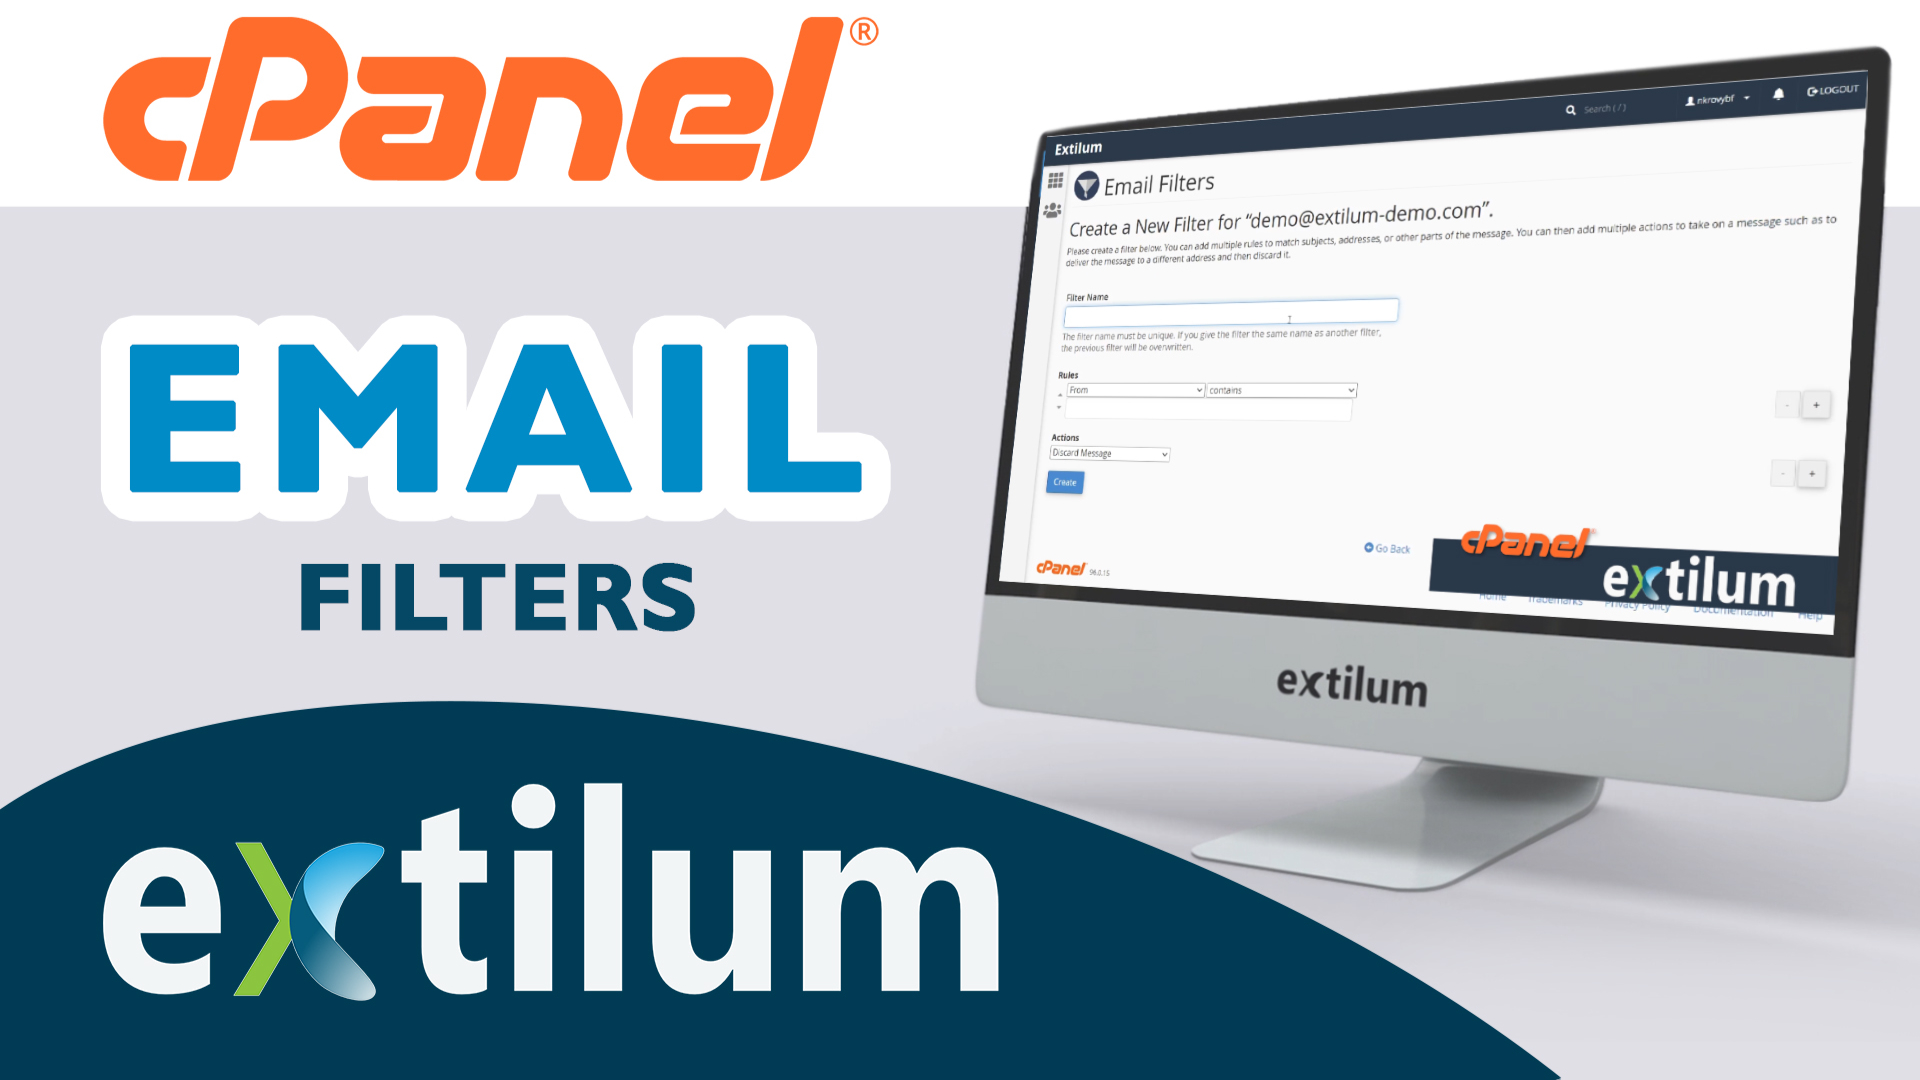 Extilum cPanel - Email filters